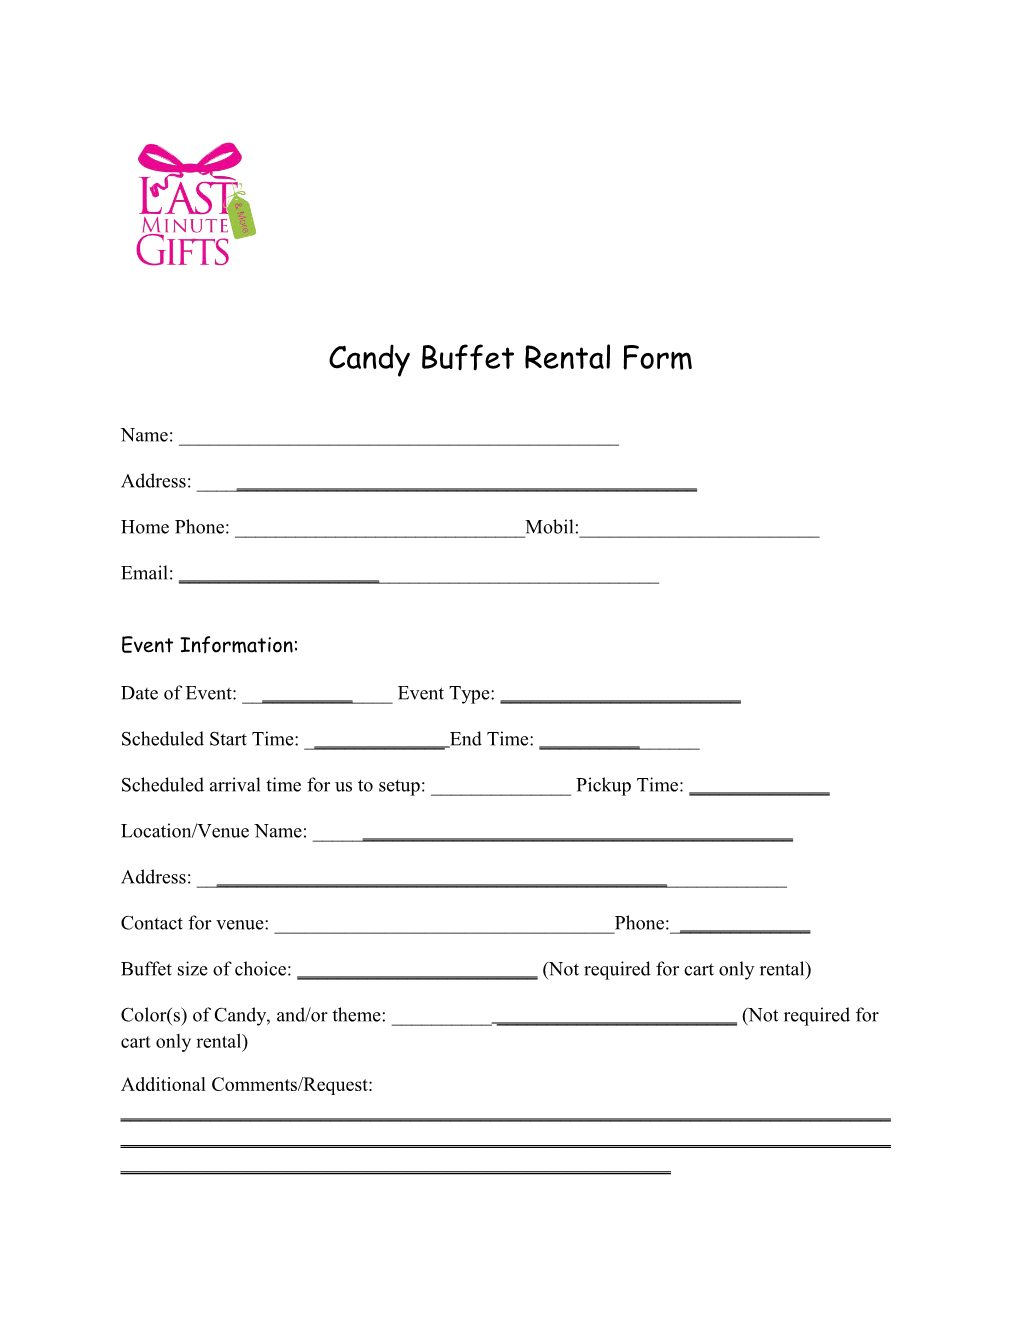 Candy Buffet Rental Form